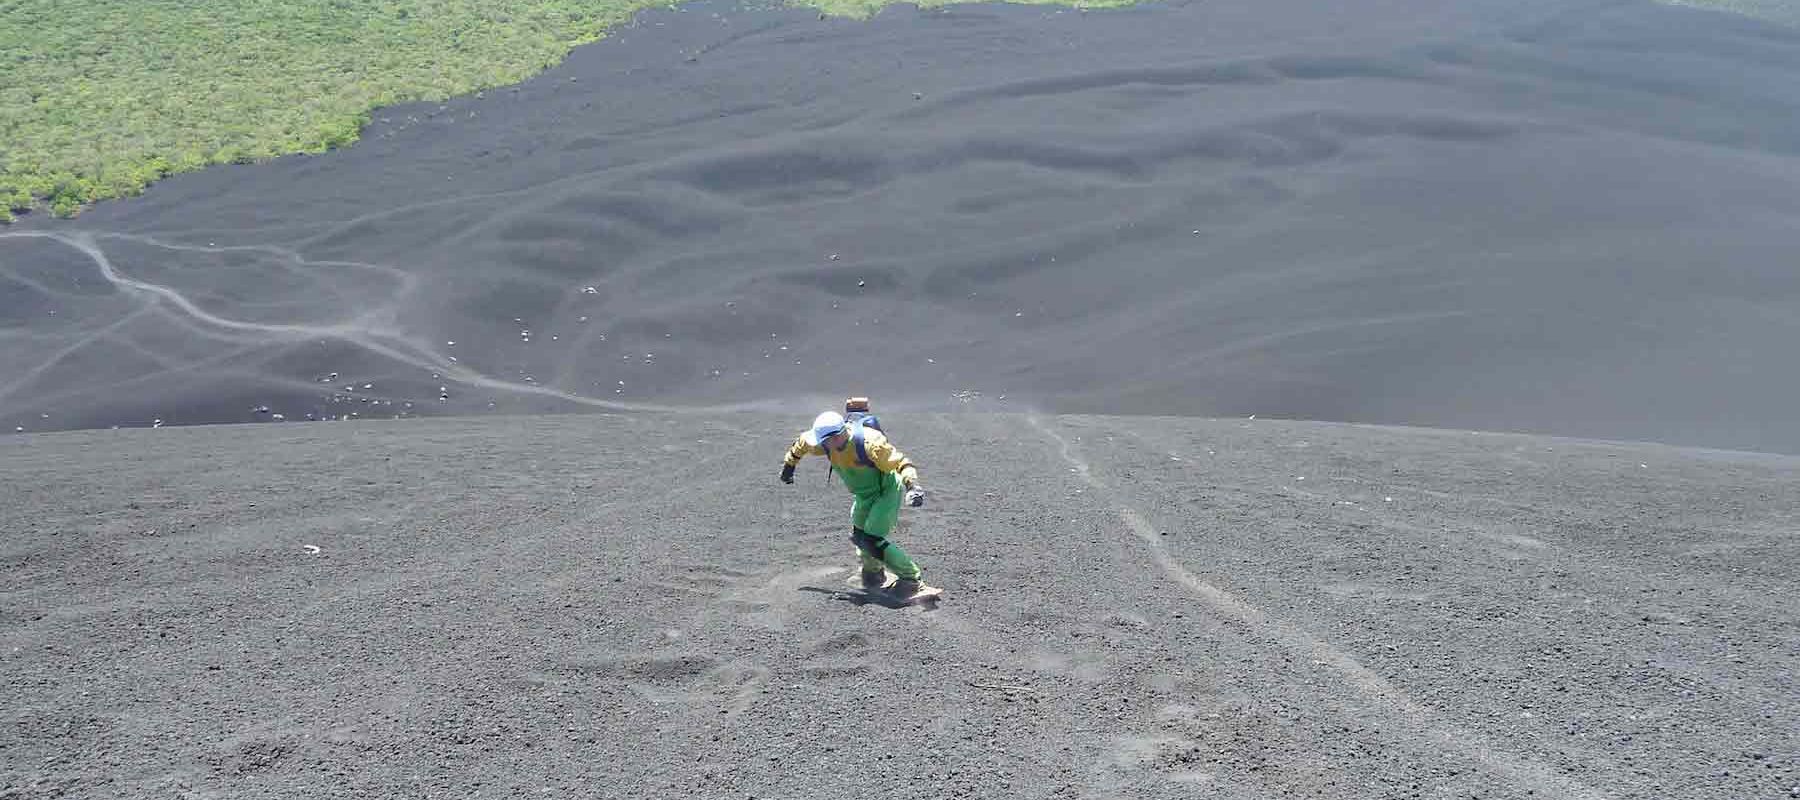 Sandboarding Tours Cerro Negro Volcano in Nicaragua